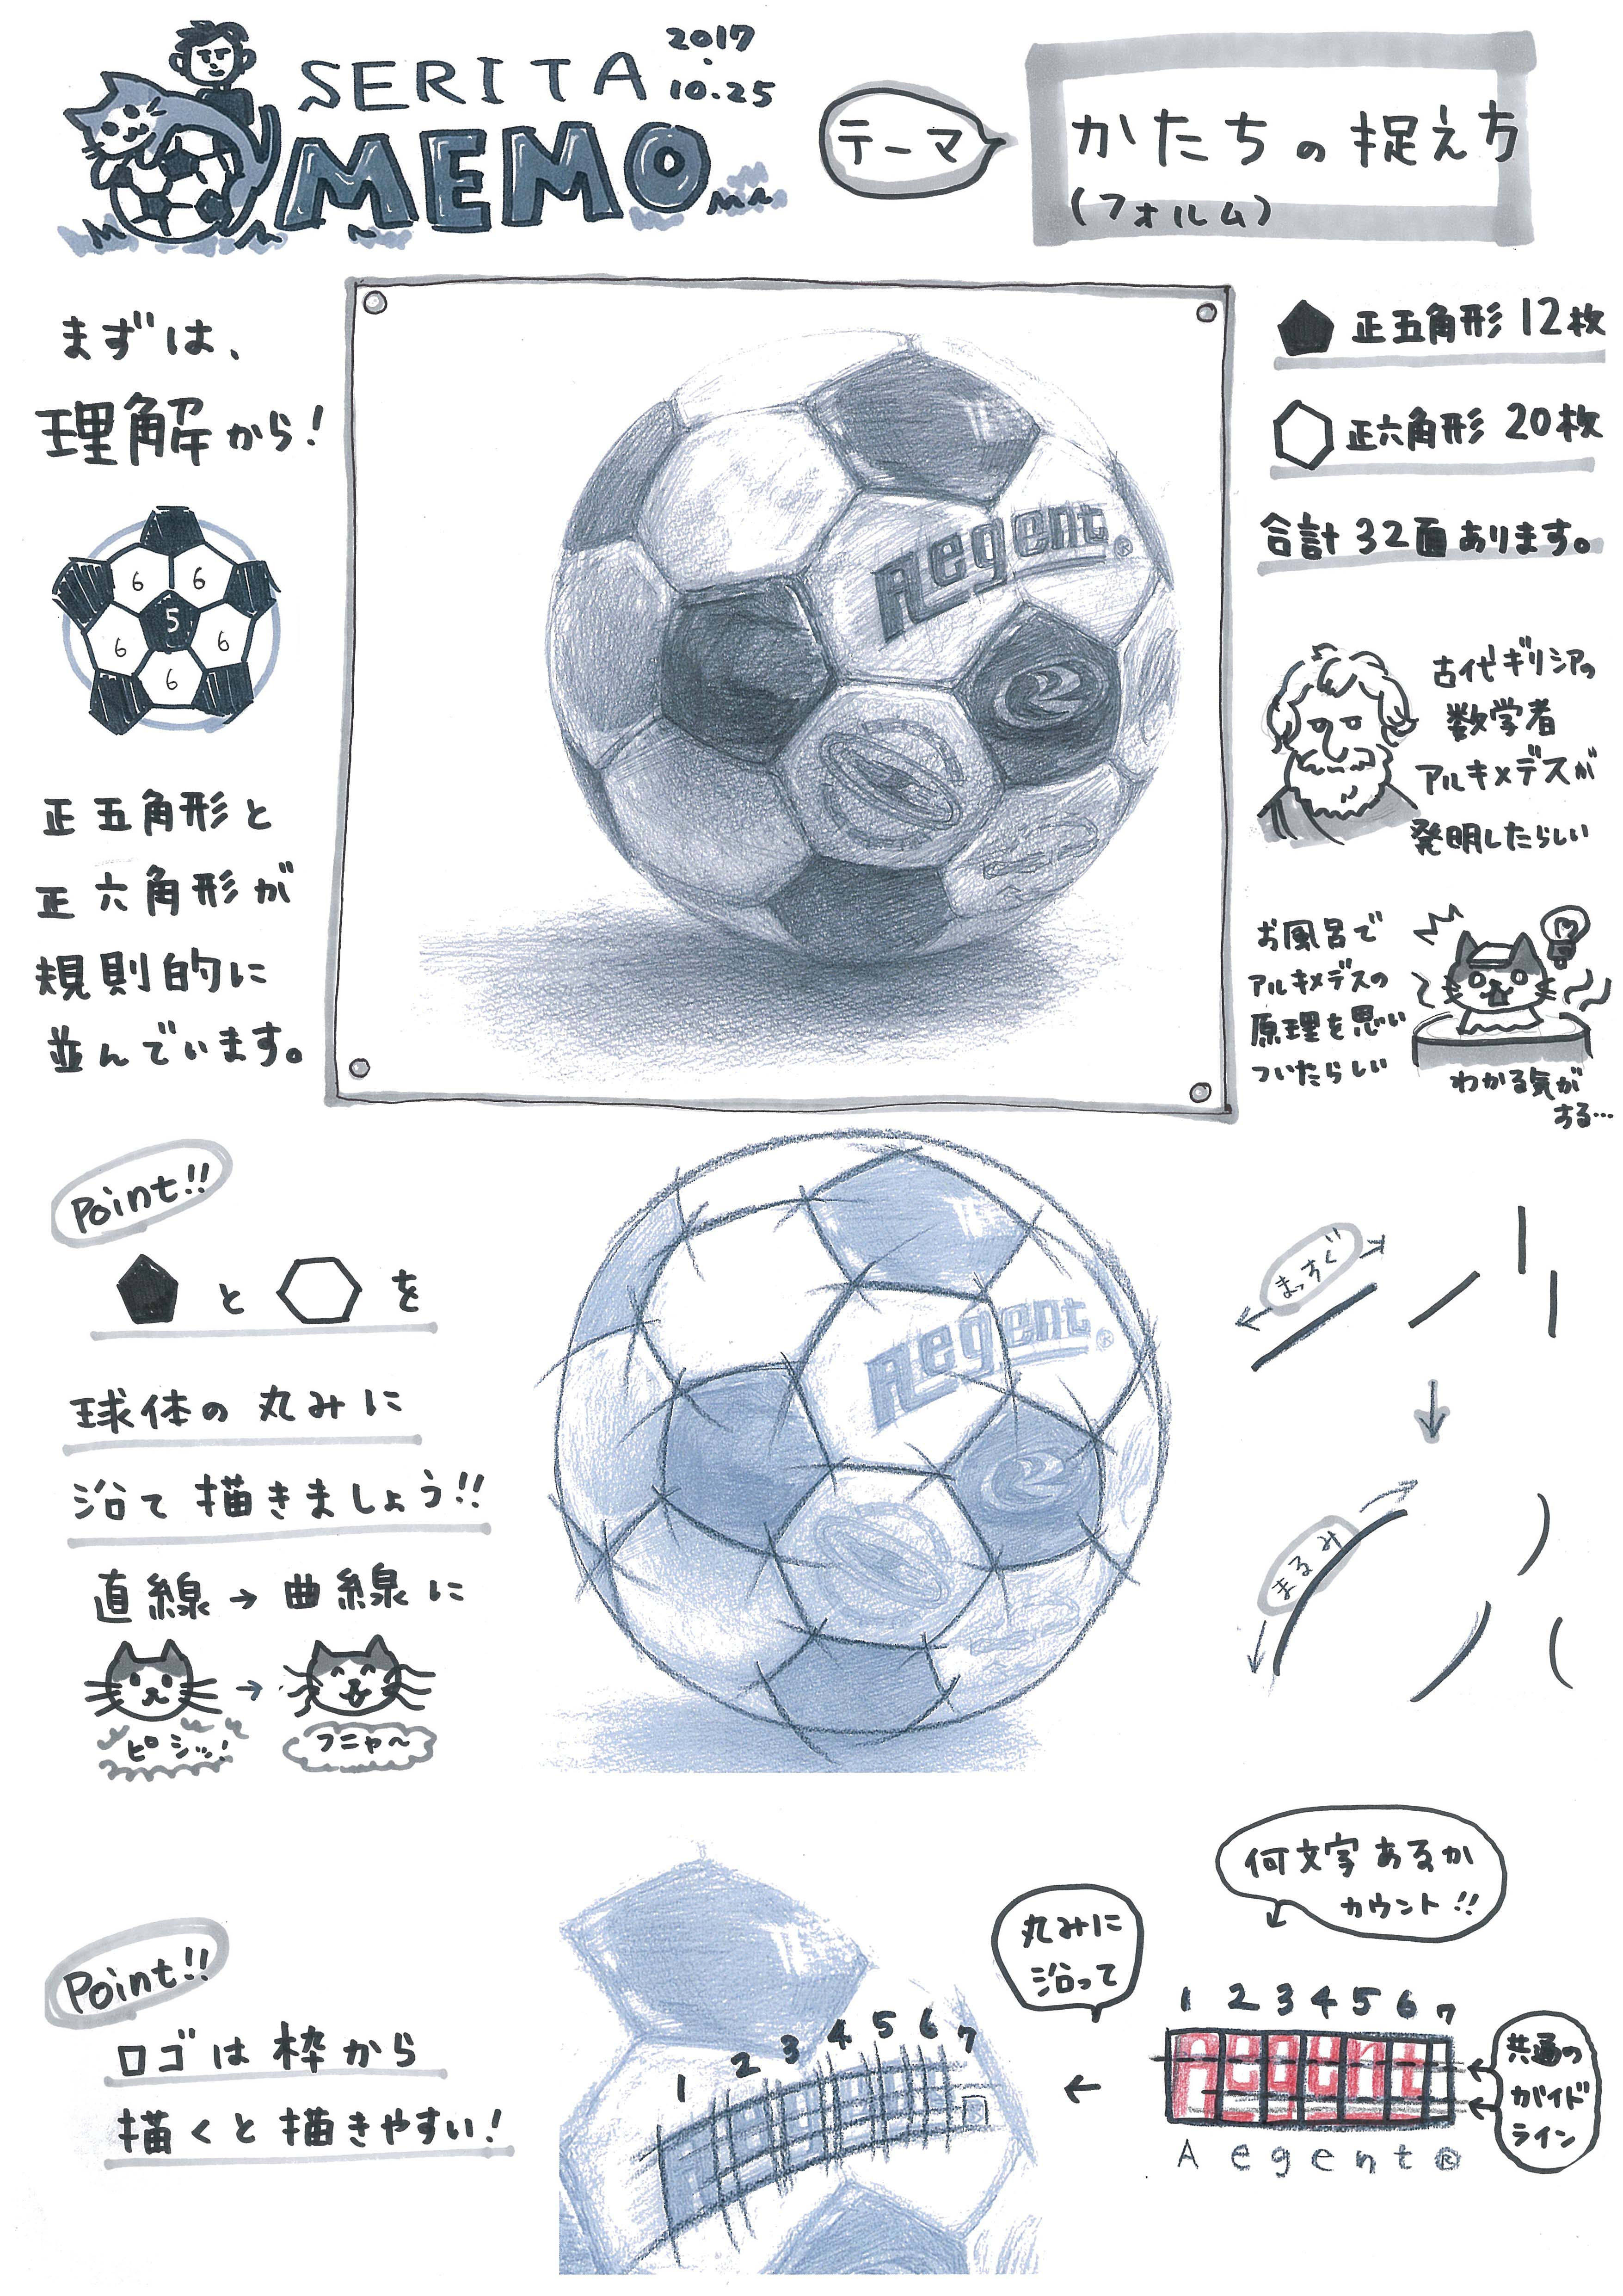 印刷 描き方 かっこいい サッカー ボール イラスト Apixtursaehc2dp